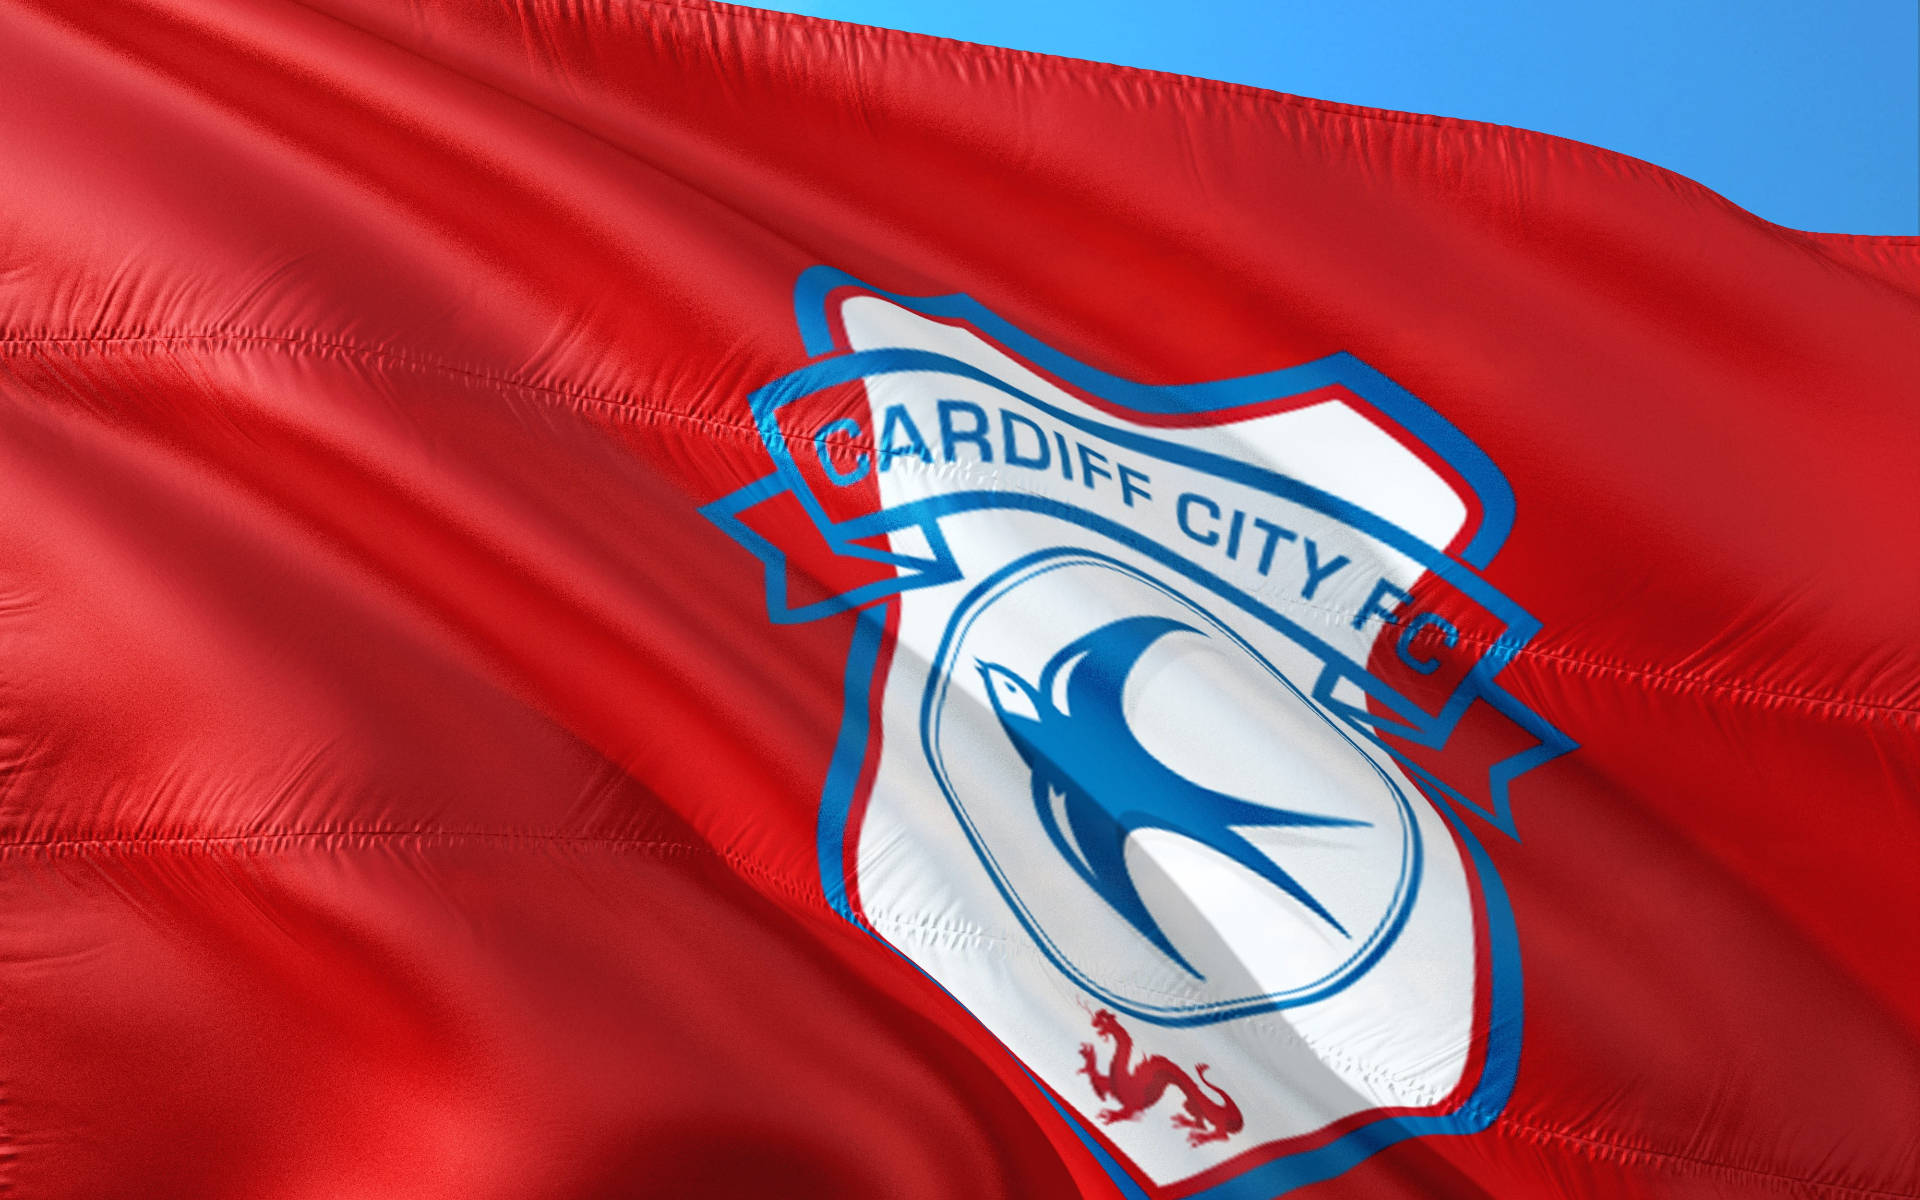 Premier League Cardiff City Flag Background